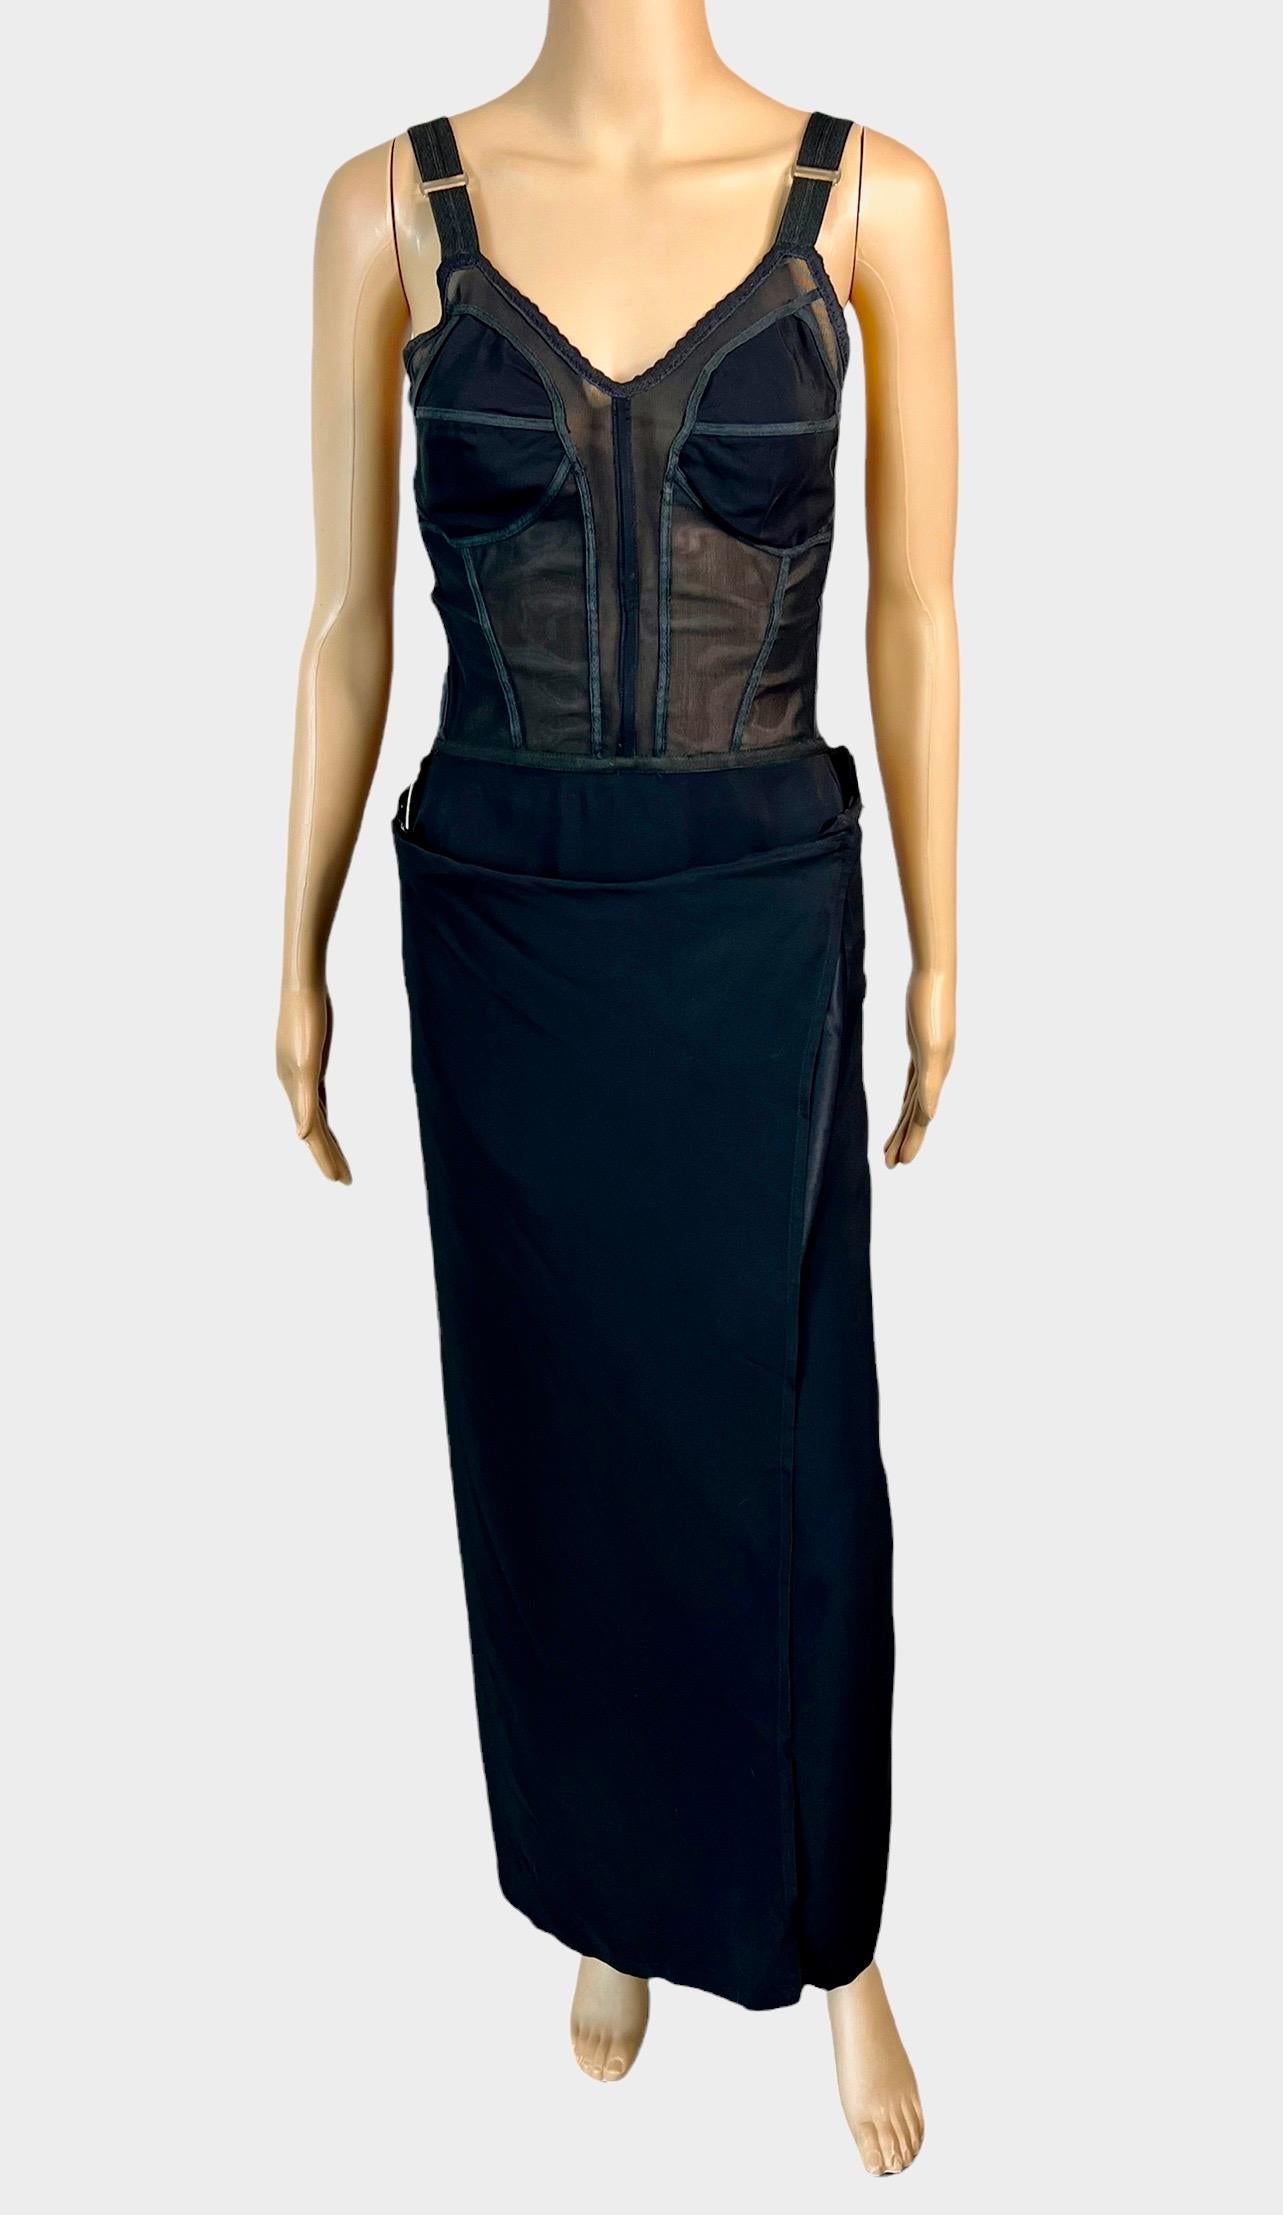 Jean Paul Gaultier S/S 1992 Runway Bra Corset Sheer Panels Black Evening Dress For Sale 8